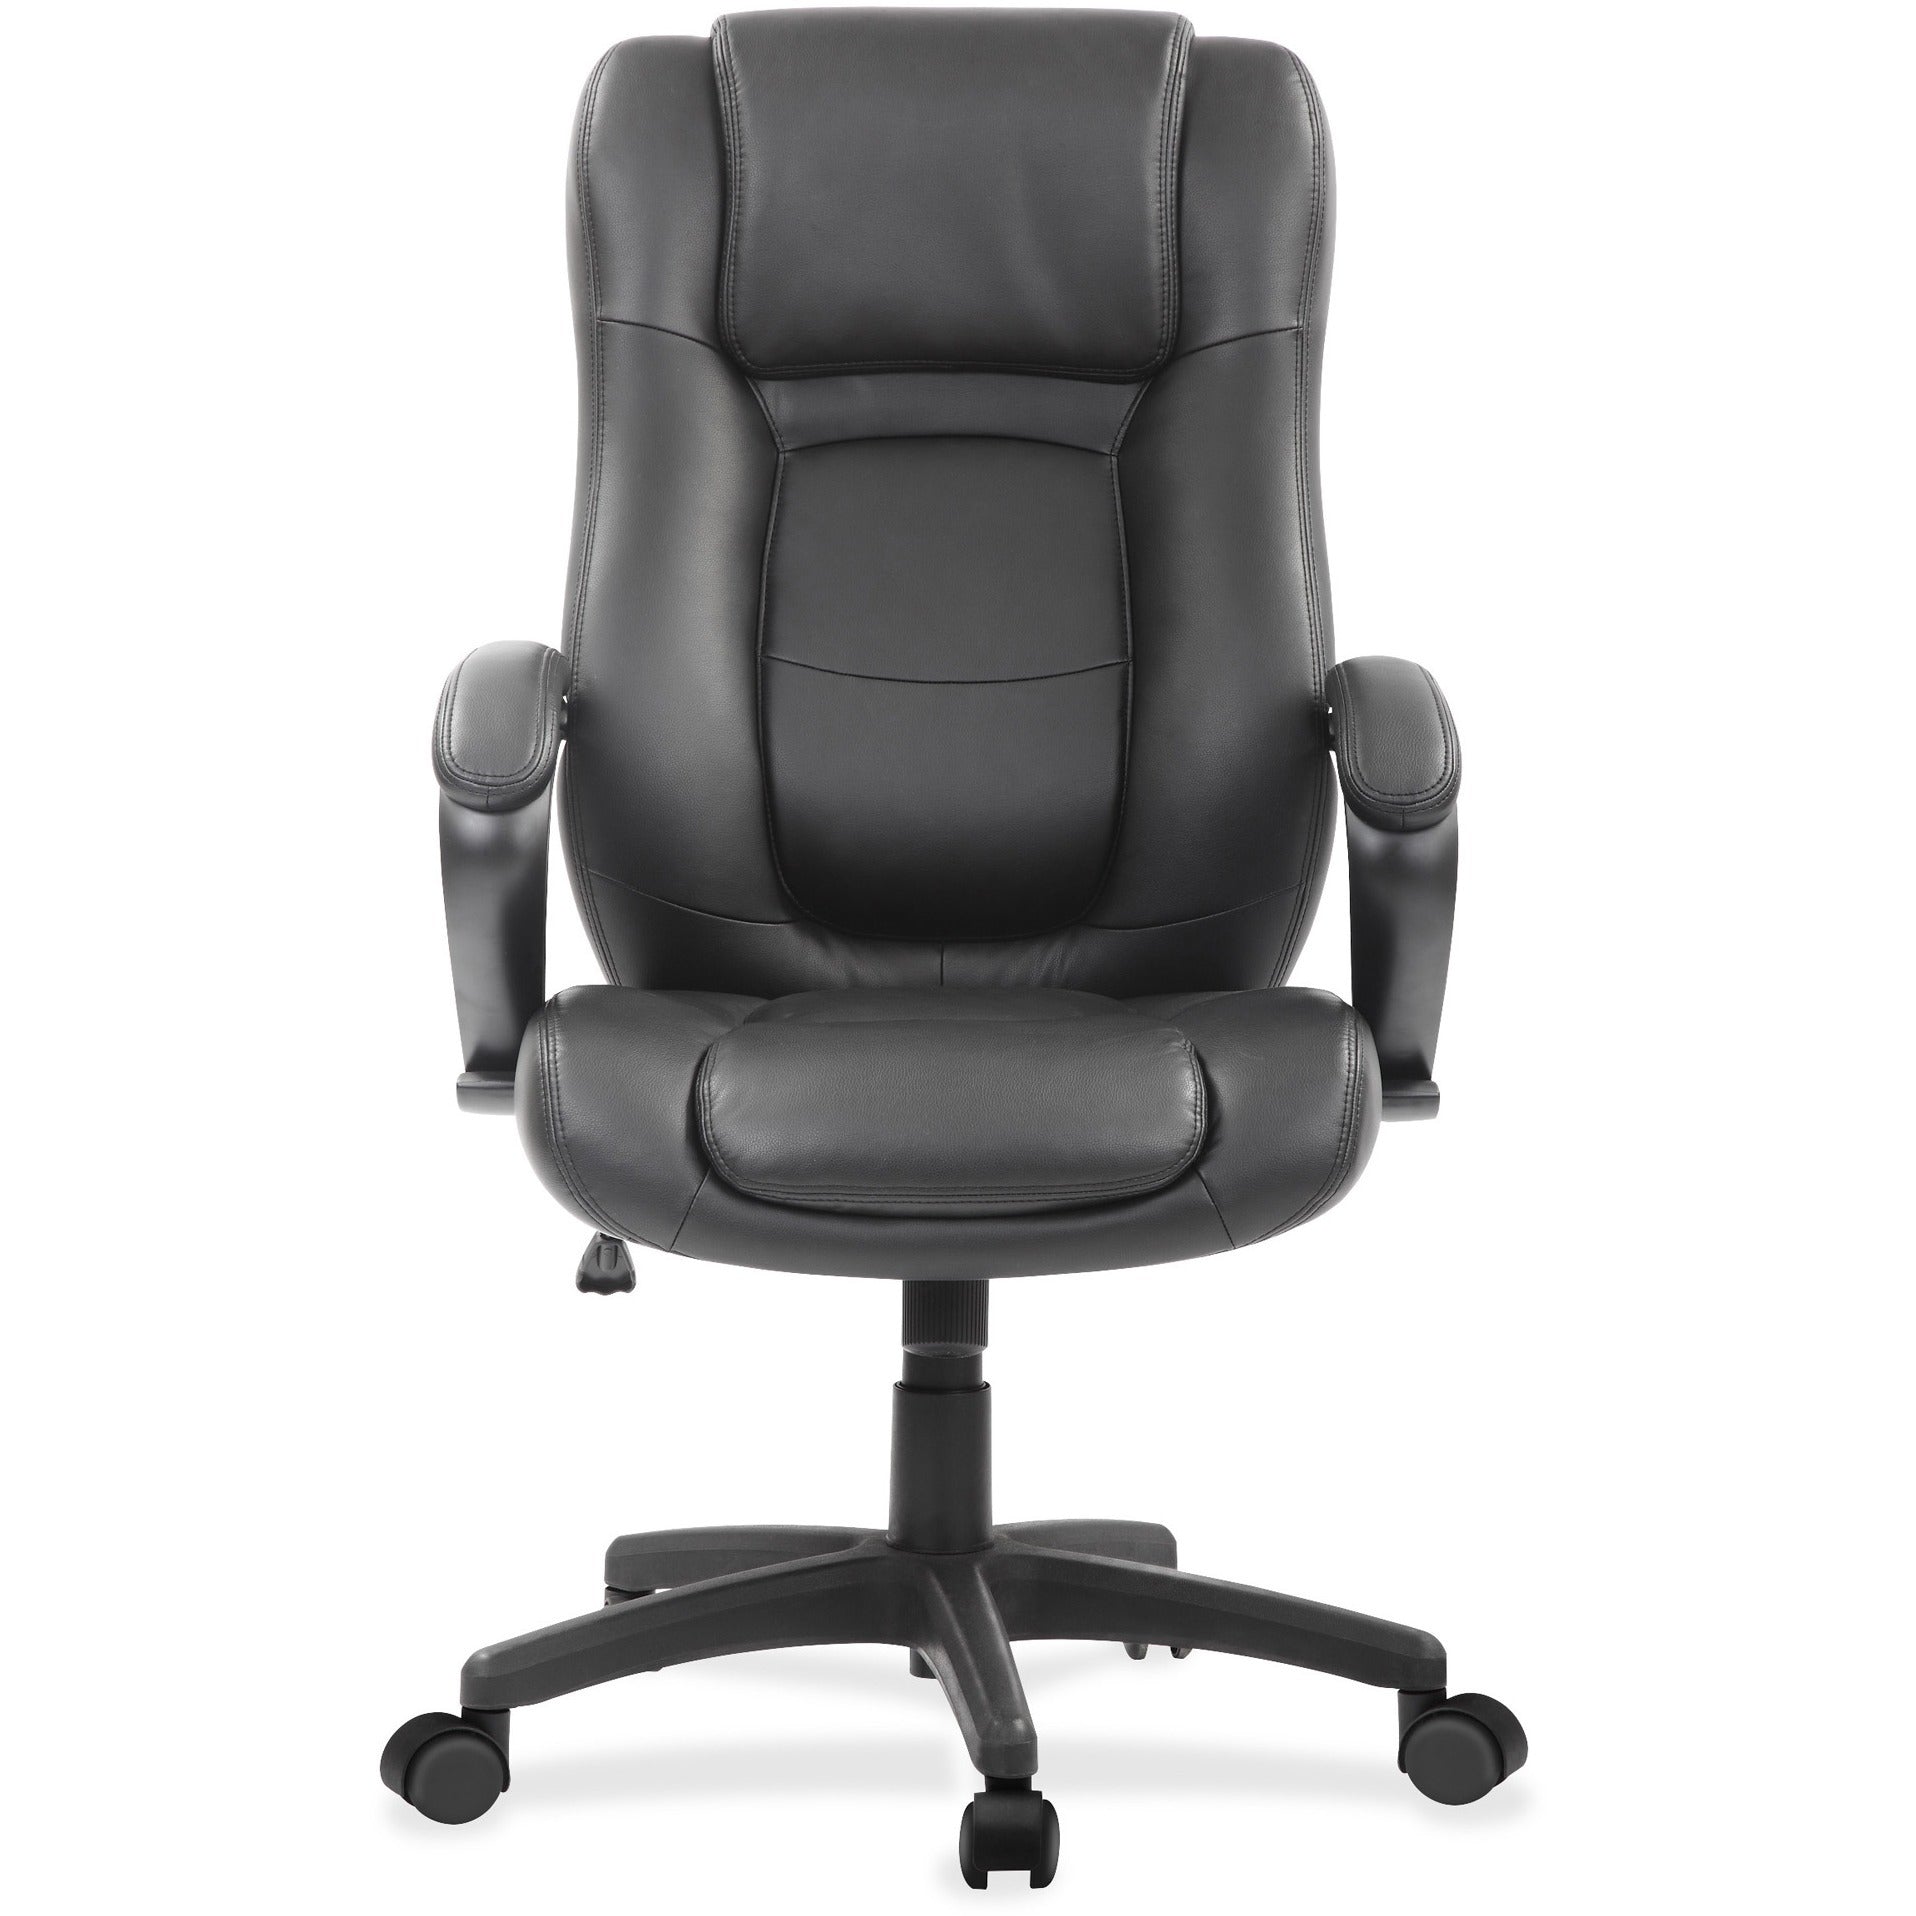 eurotech-pembroke-mid-back-executive-chair-black-bonded-leather-seat-black-bonded-leather-back-high-back-5-star-base-1-each_eutle521 - 2